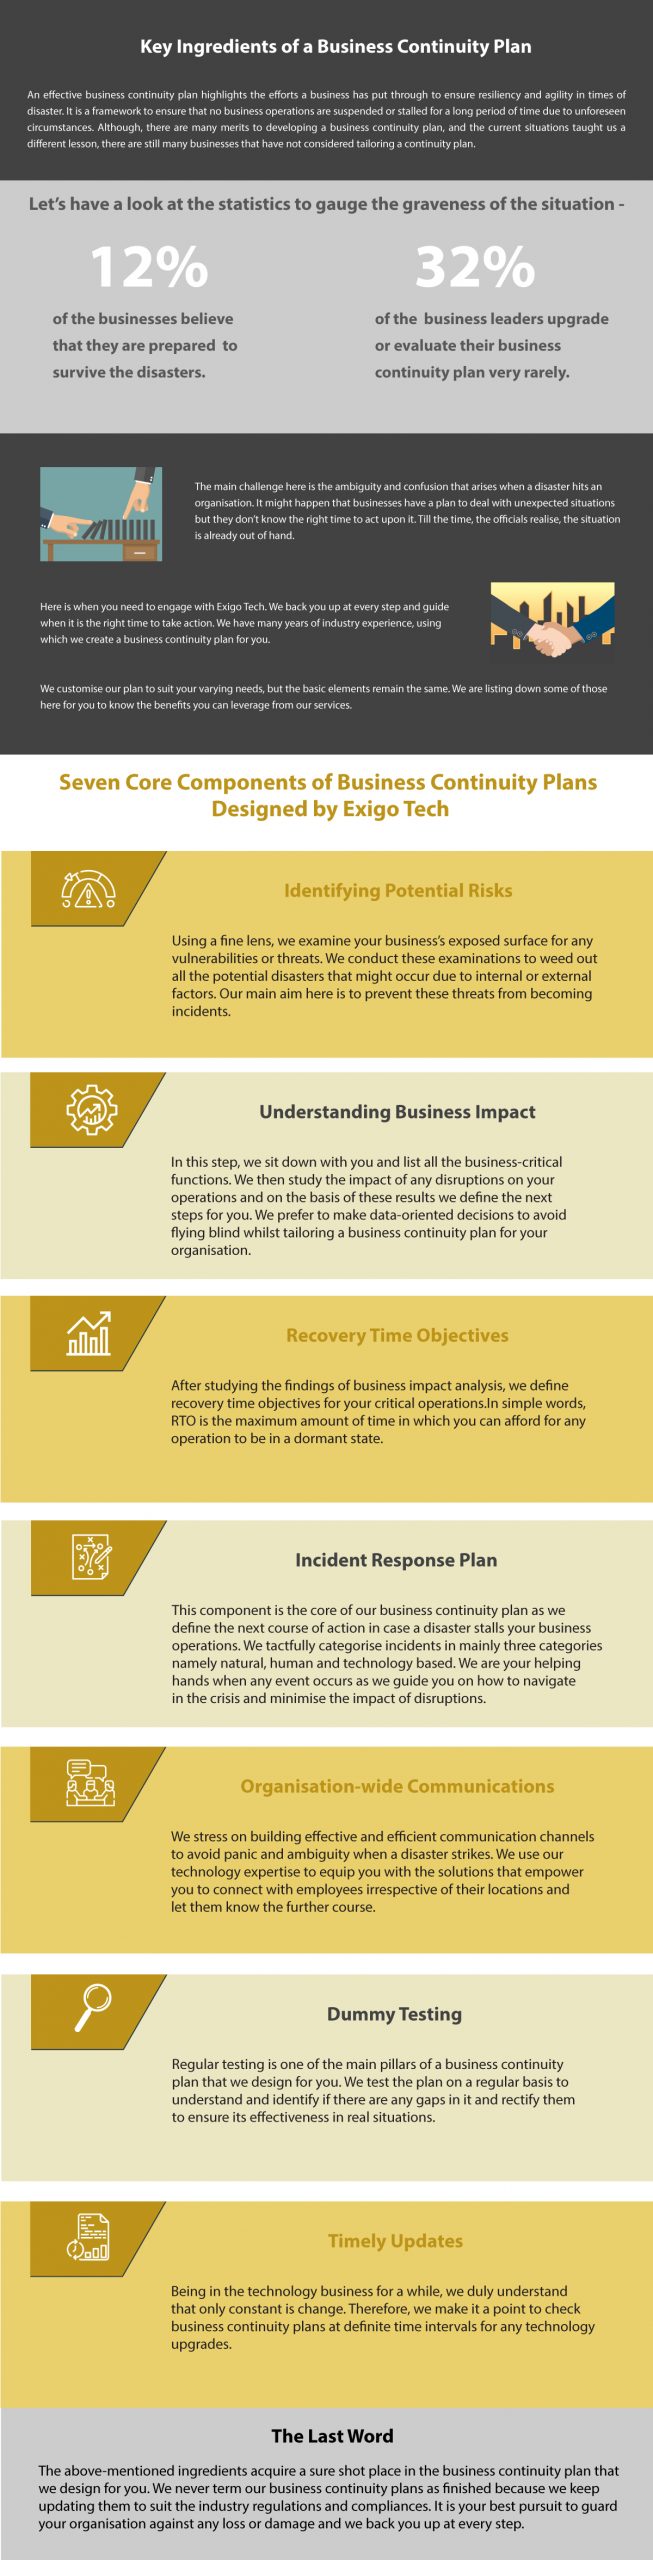 Key points of Business Continuity Plan – Exigo Tech 